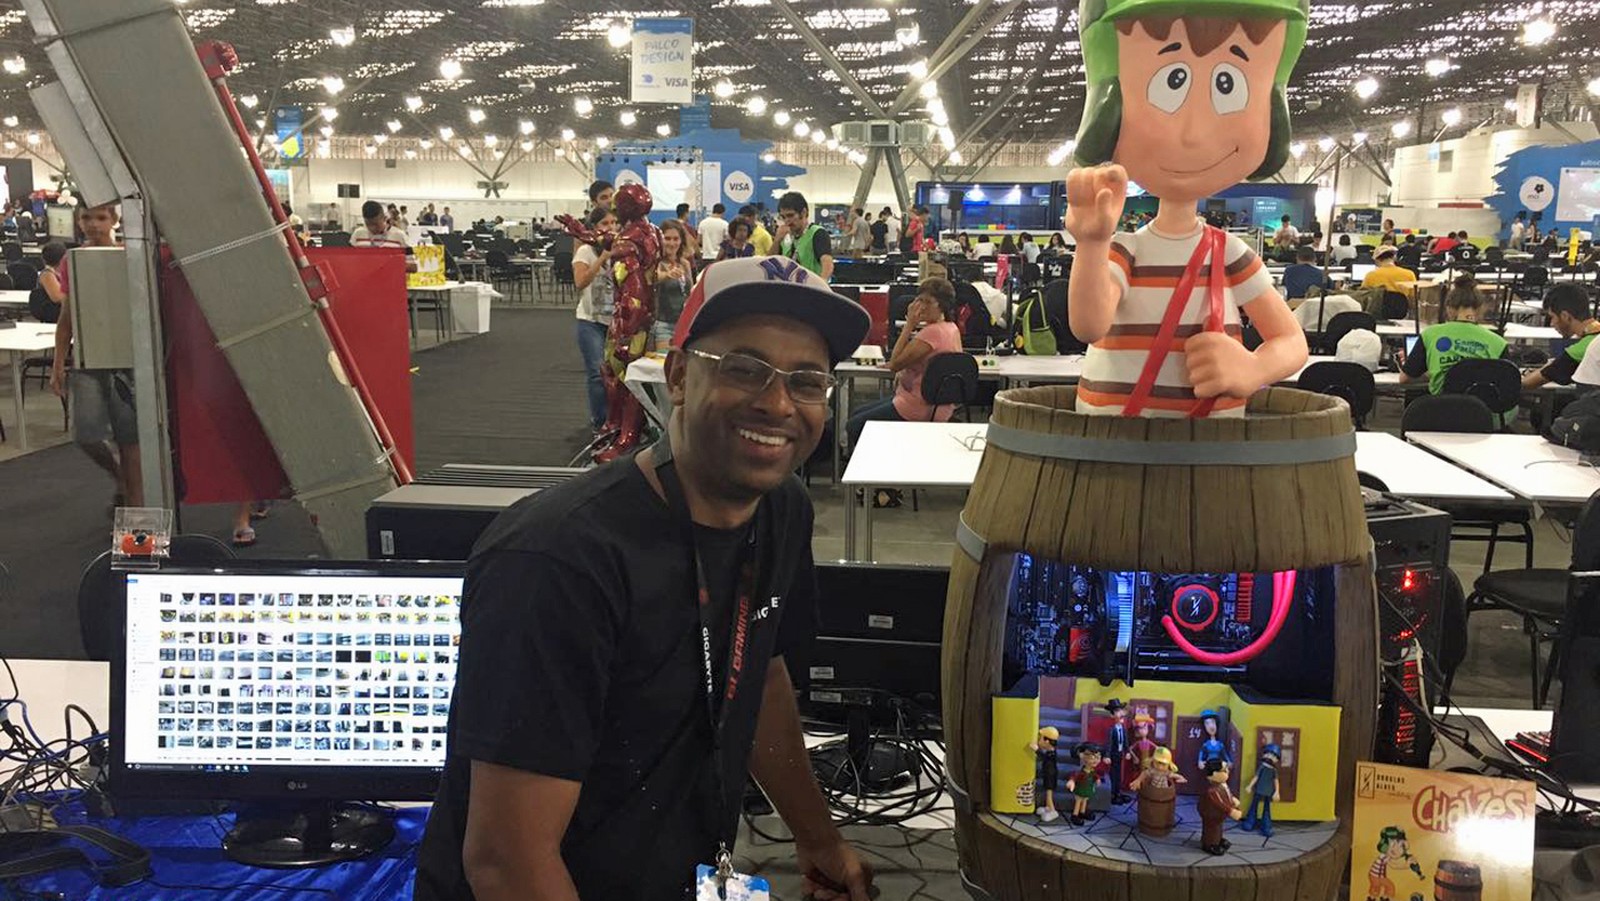 Paulistano montou "computador de R$ 8 mil do Chaves" para disputar campeonato na Campus Party 2017